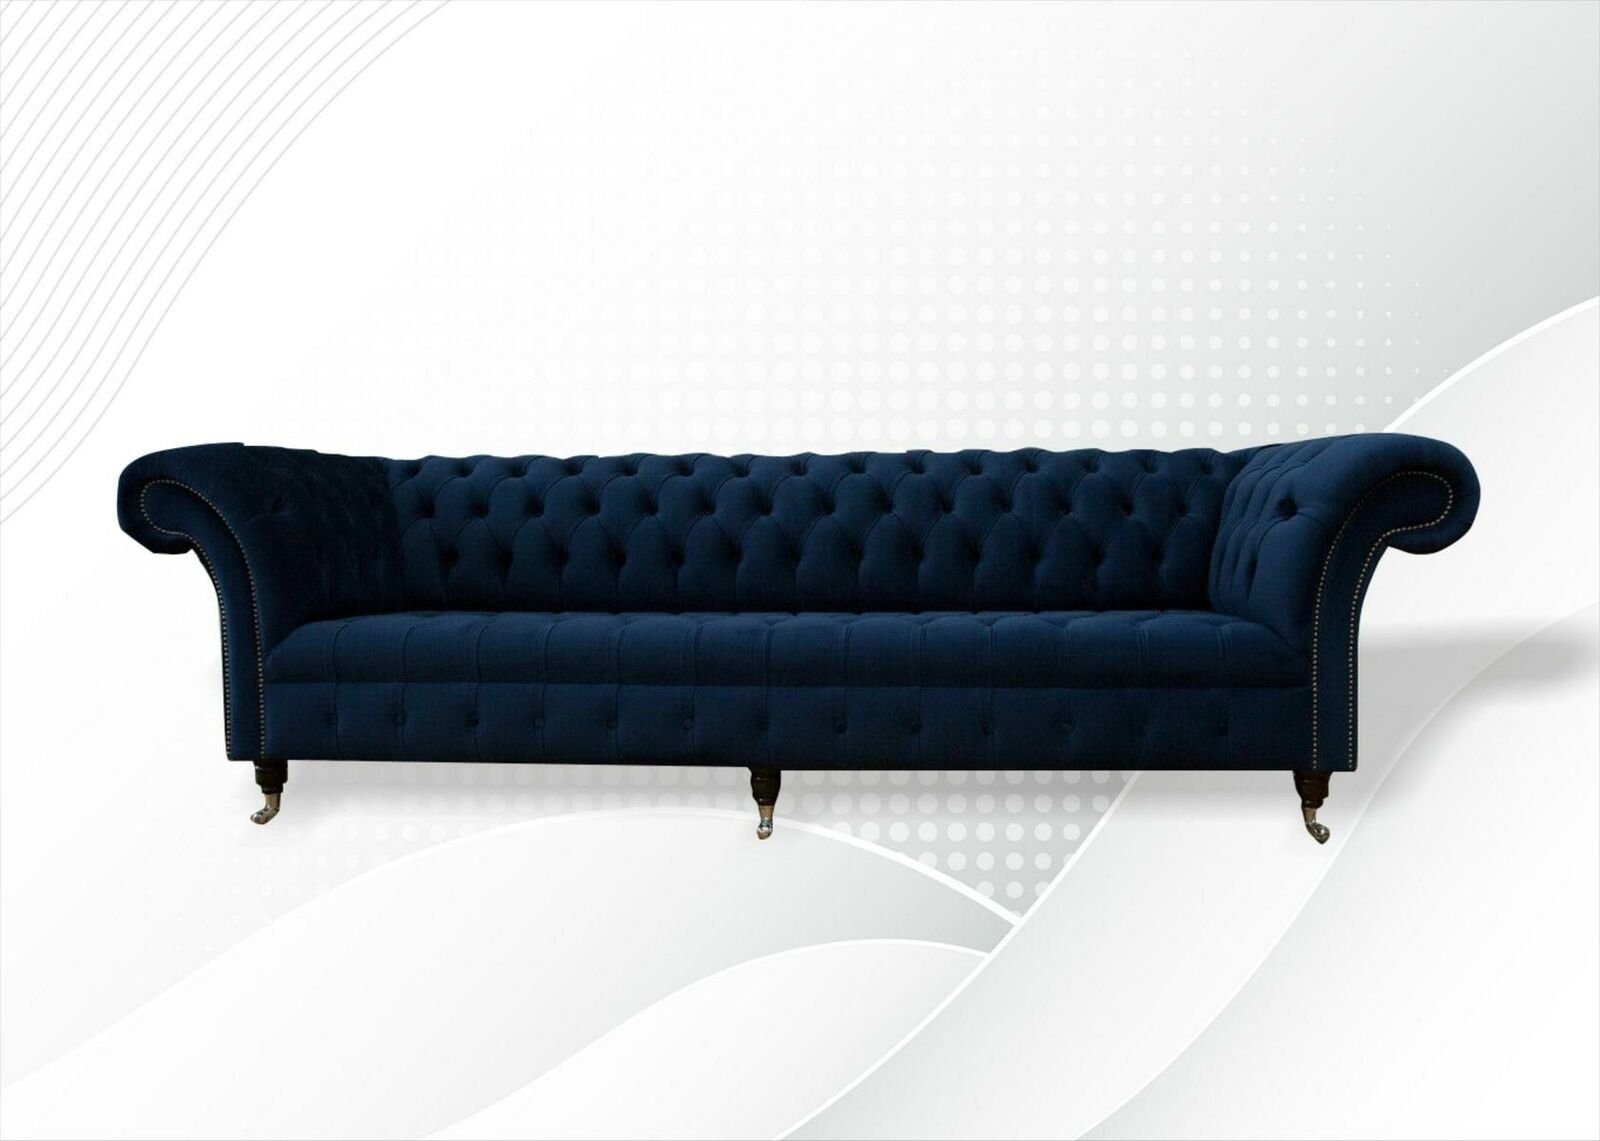 JVmoebel Chesterfield-Sofa Dunkelblauer 4-Sitzer luxus Chesterfield Möbel Neu, Made in Europe | Chesterfield-Sofas